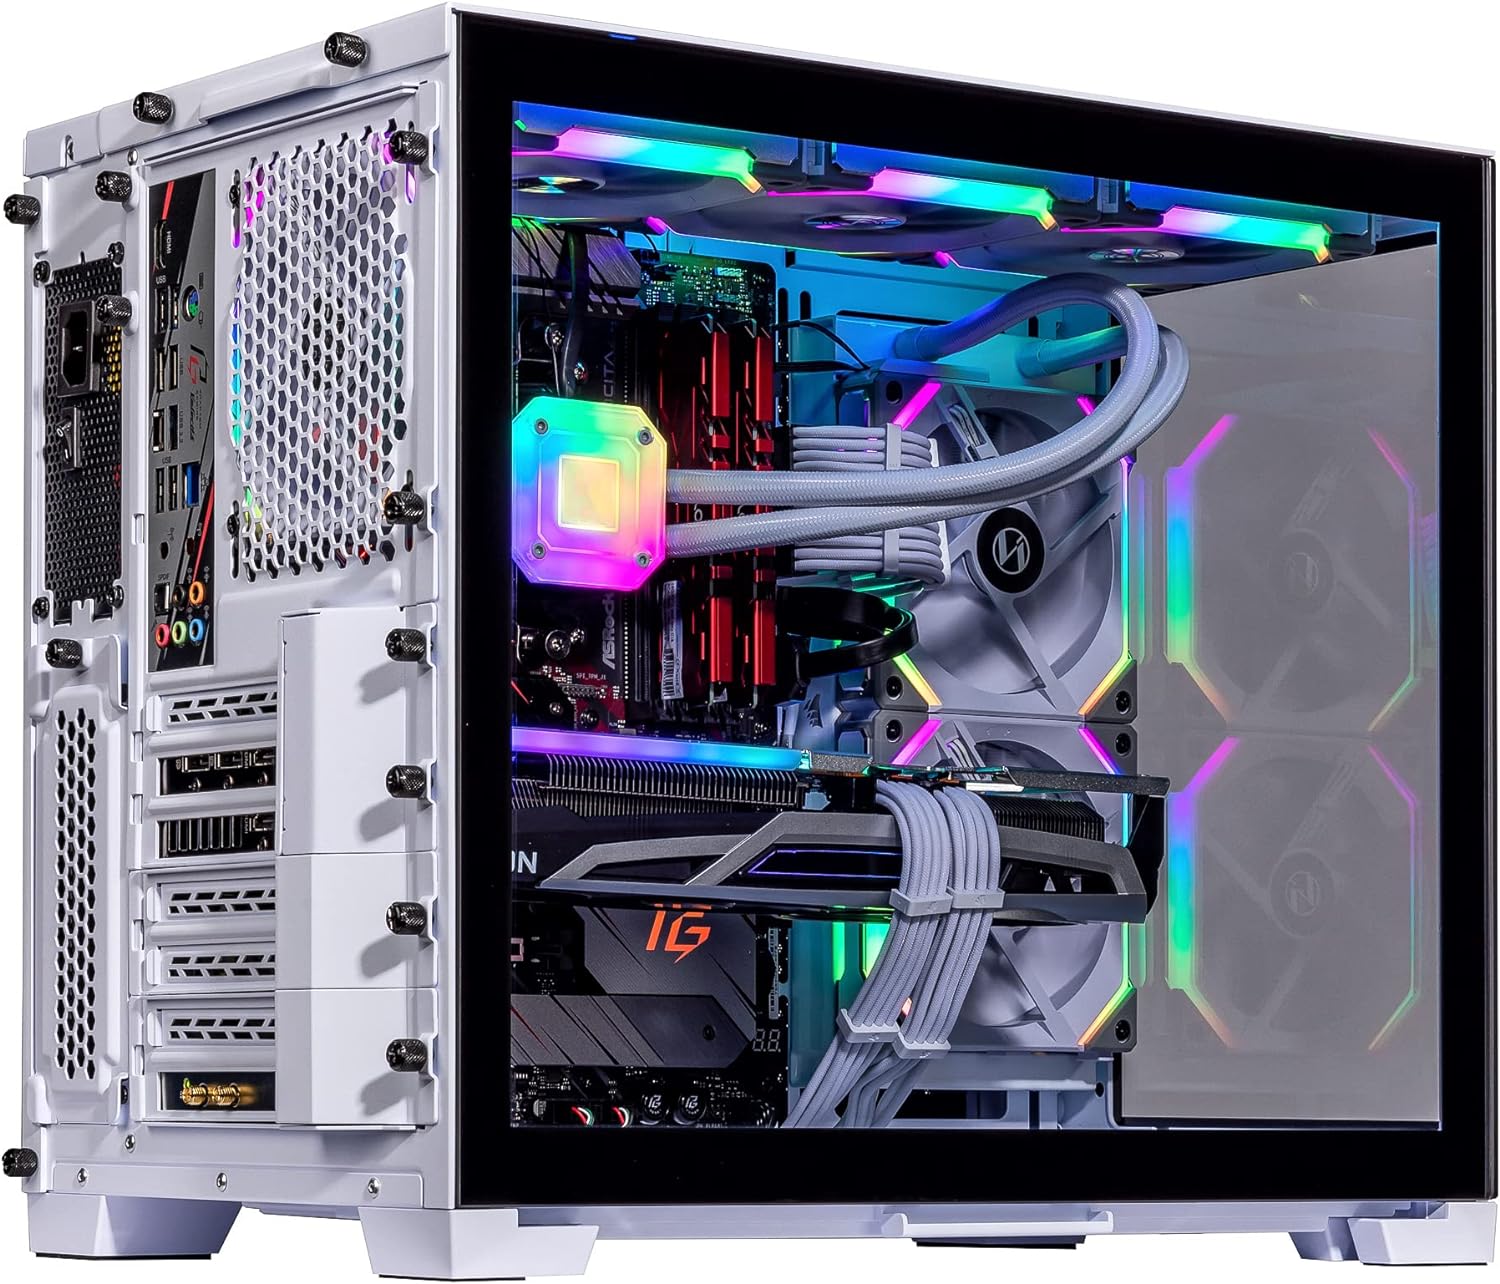 Velztorm Mini Lux Gaming Desktop PC (AMD Ryzen 9 5950X 16-Core, Radeon RX 7900 XT, 16GB RAM, 2TB PCIe SSD + 2TB HDD (3.5), WiFi, USB 3.2, HDMI, Display Port, Win 10 Home)